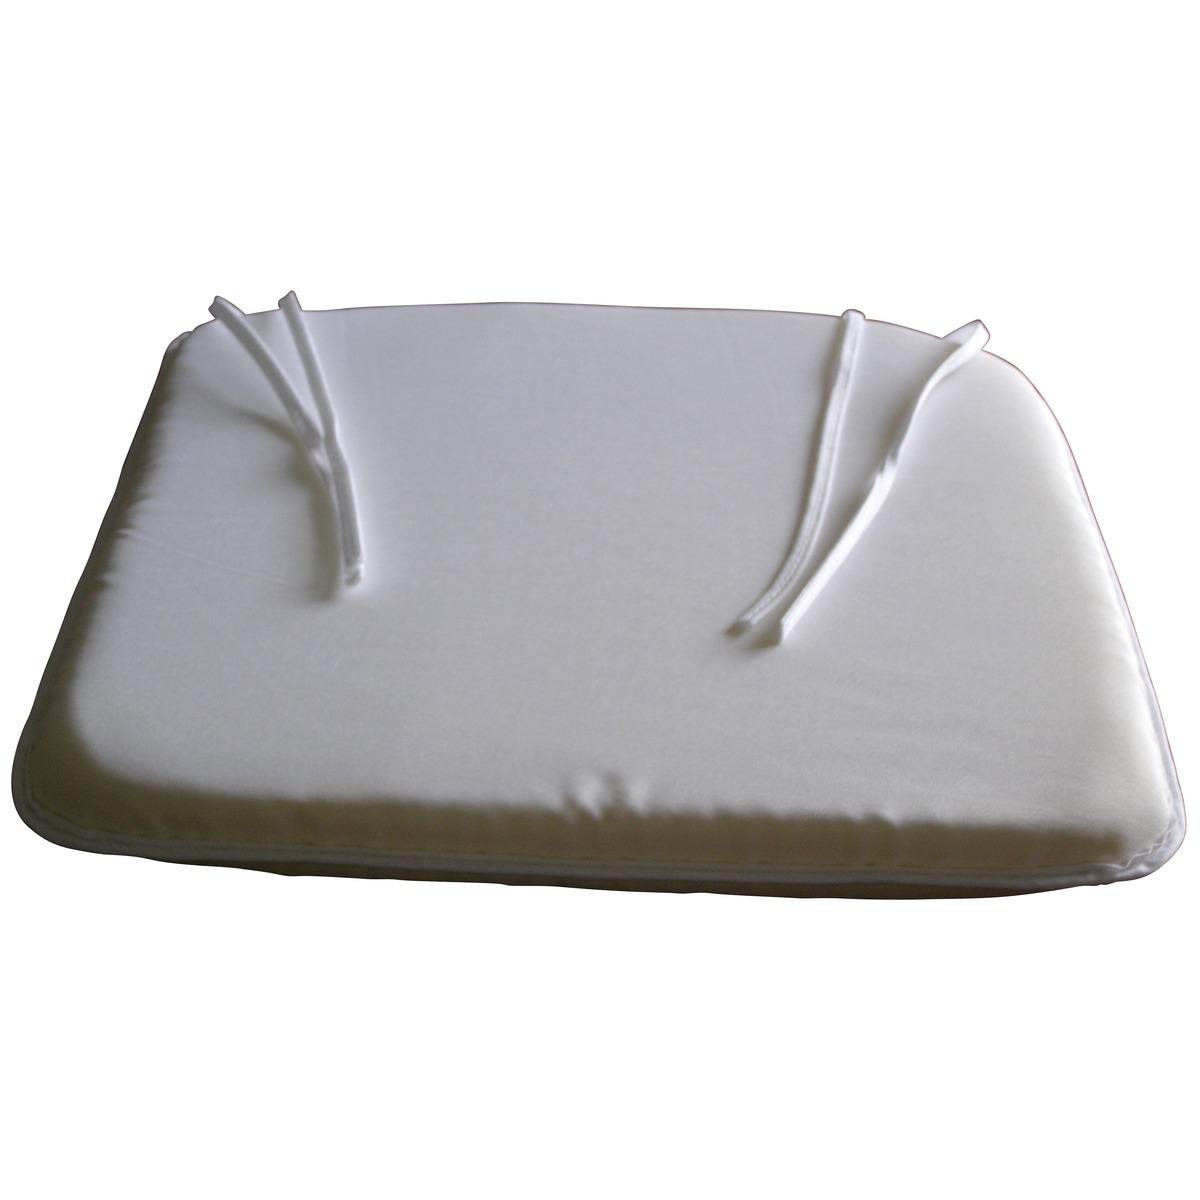 Galette de chaise 100% polyester - 36 x 38 cm - Blanc